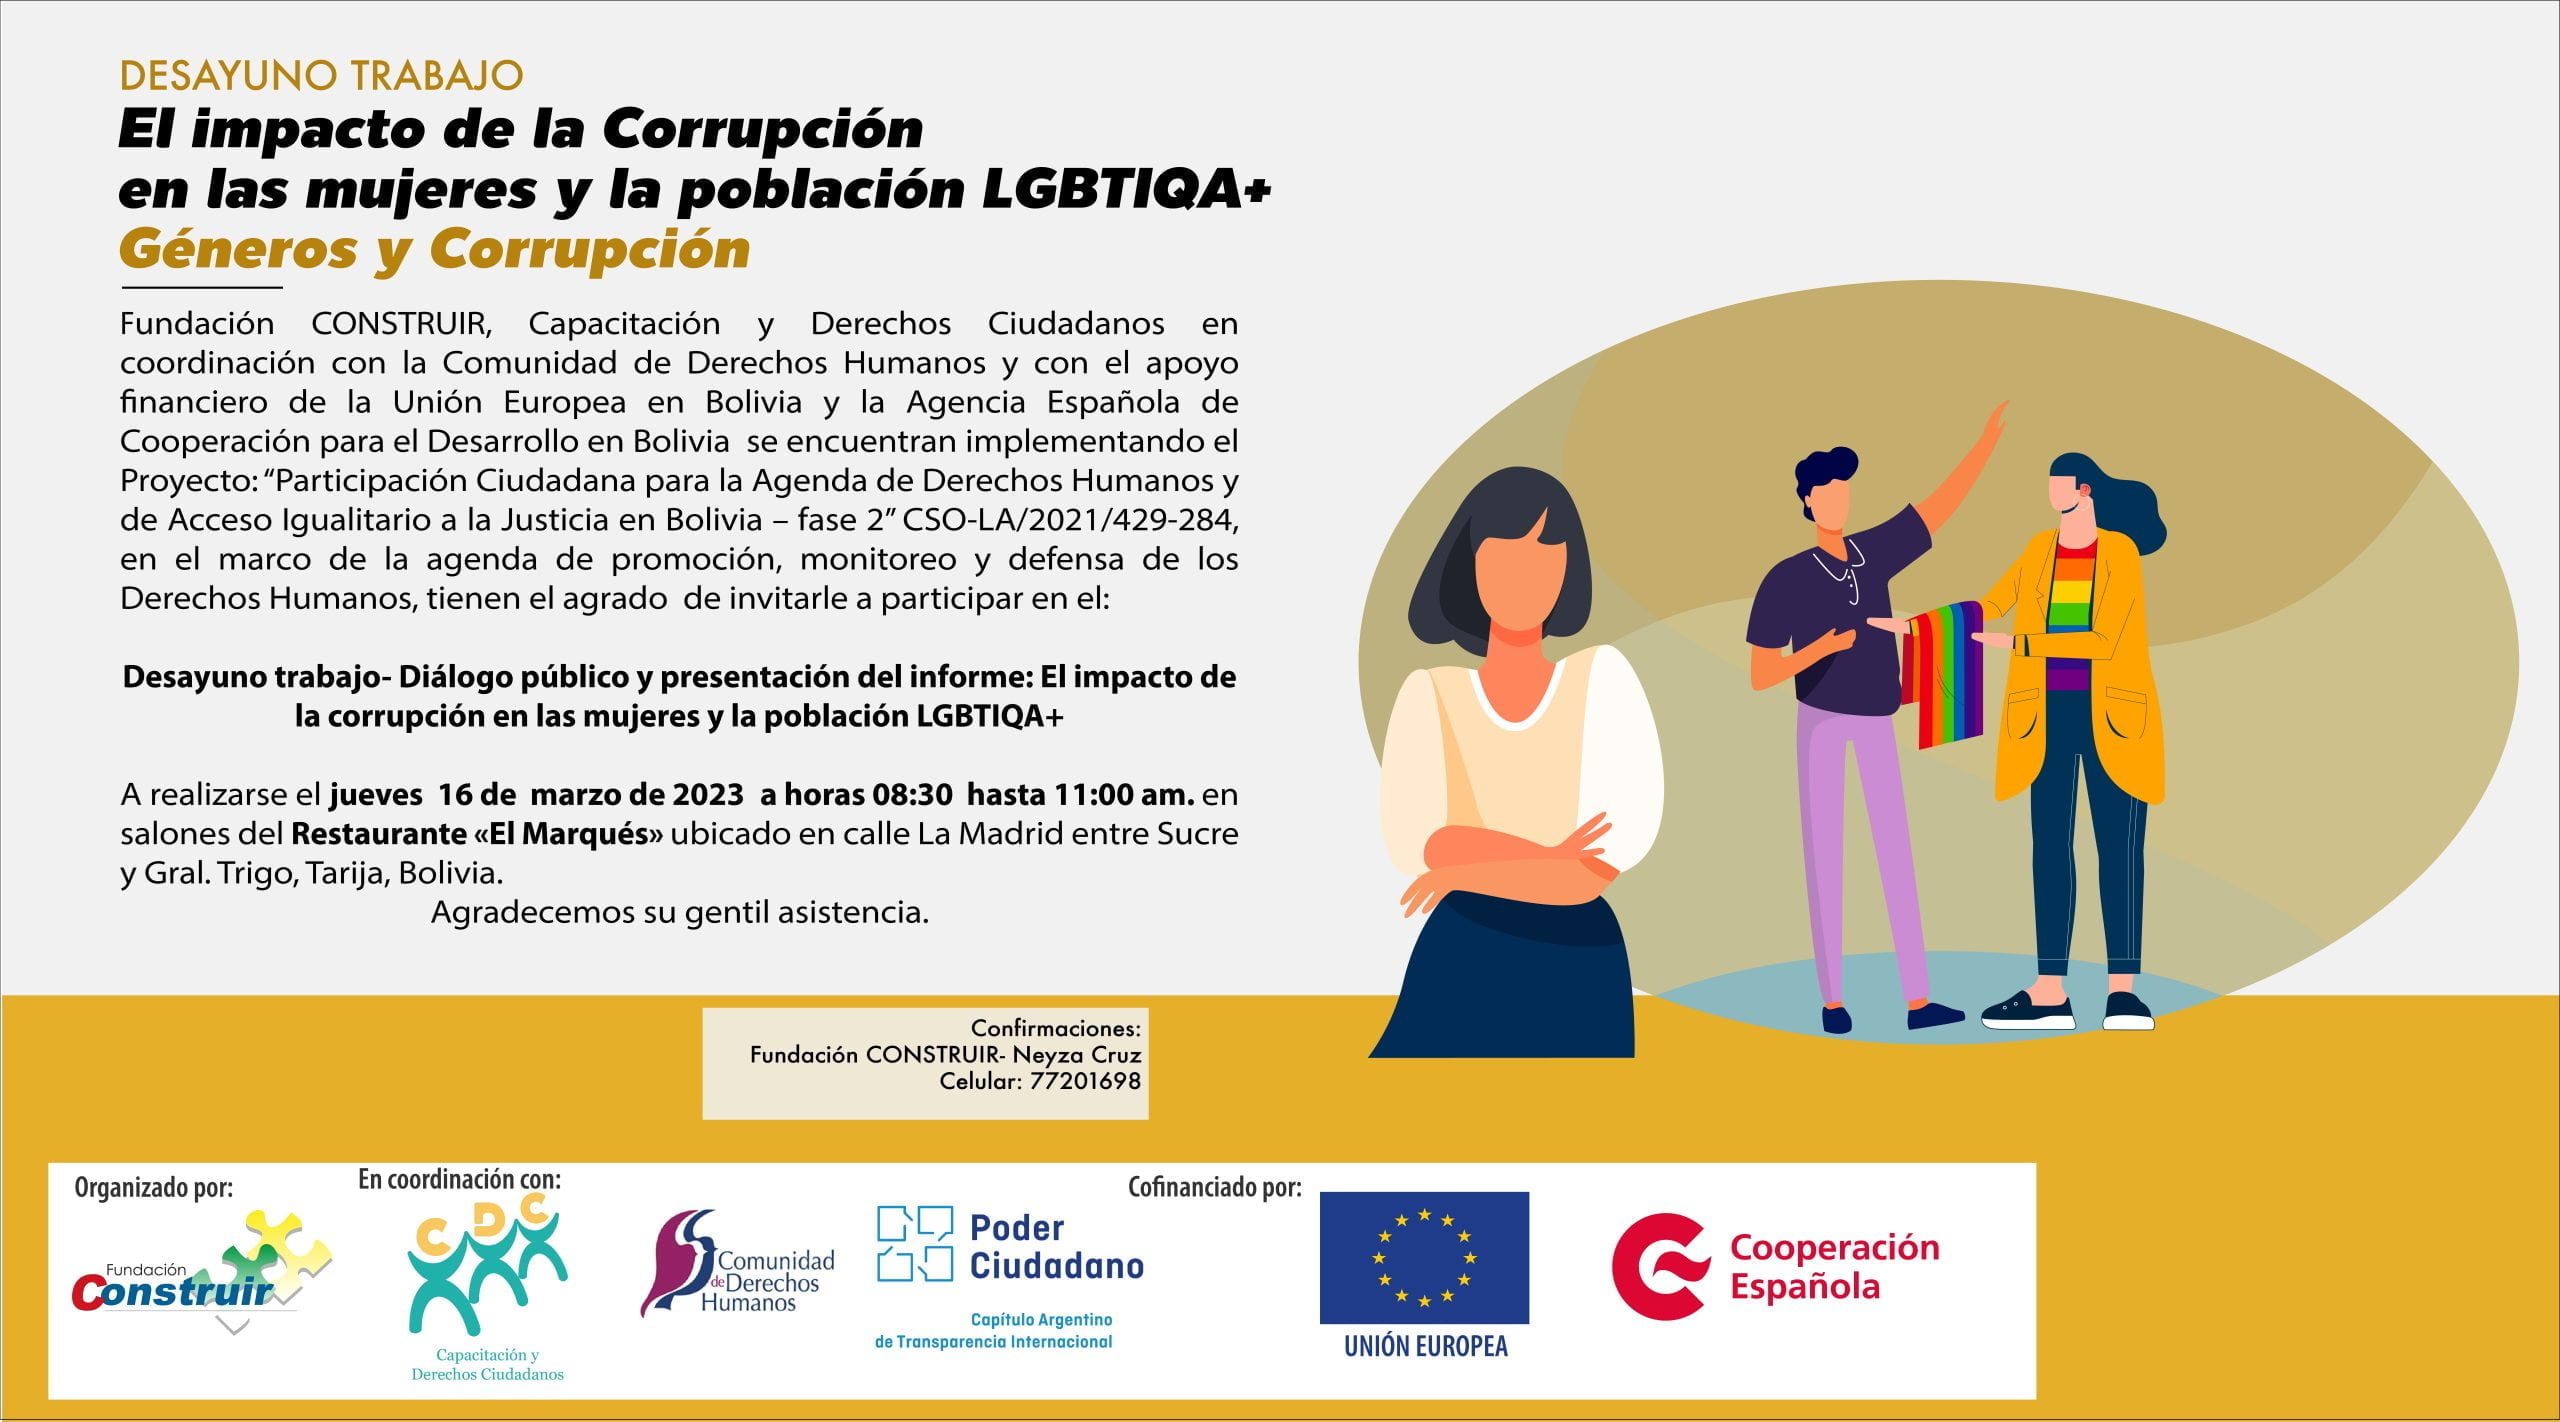 Tarija Diálogo público y presentación del informe: El impacto de la corrupción en las mujeres y la población LGBTIQA+